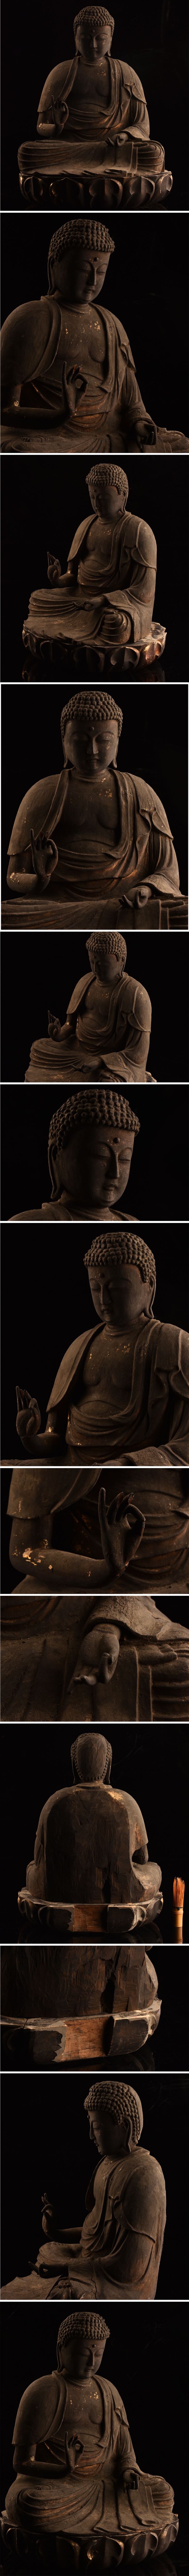 超歓迎得価仏教美術 時代 木彫阿弥陀如来像 高 43.5cm DC249 仏像